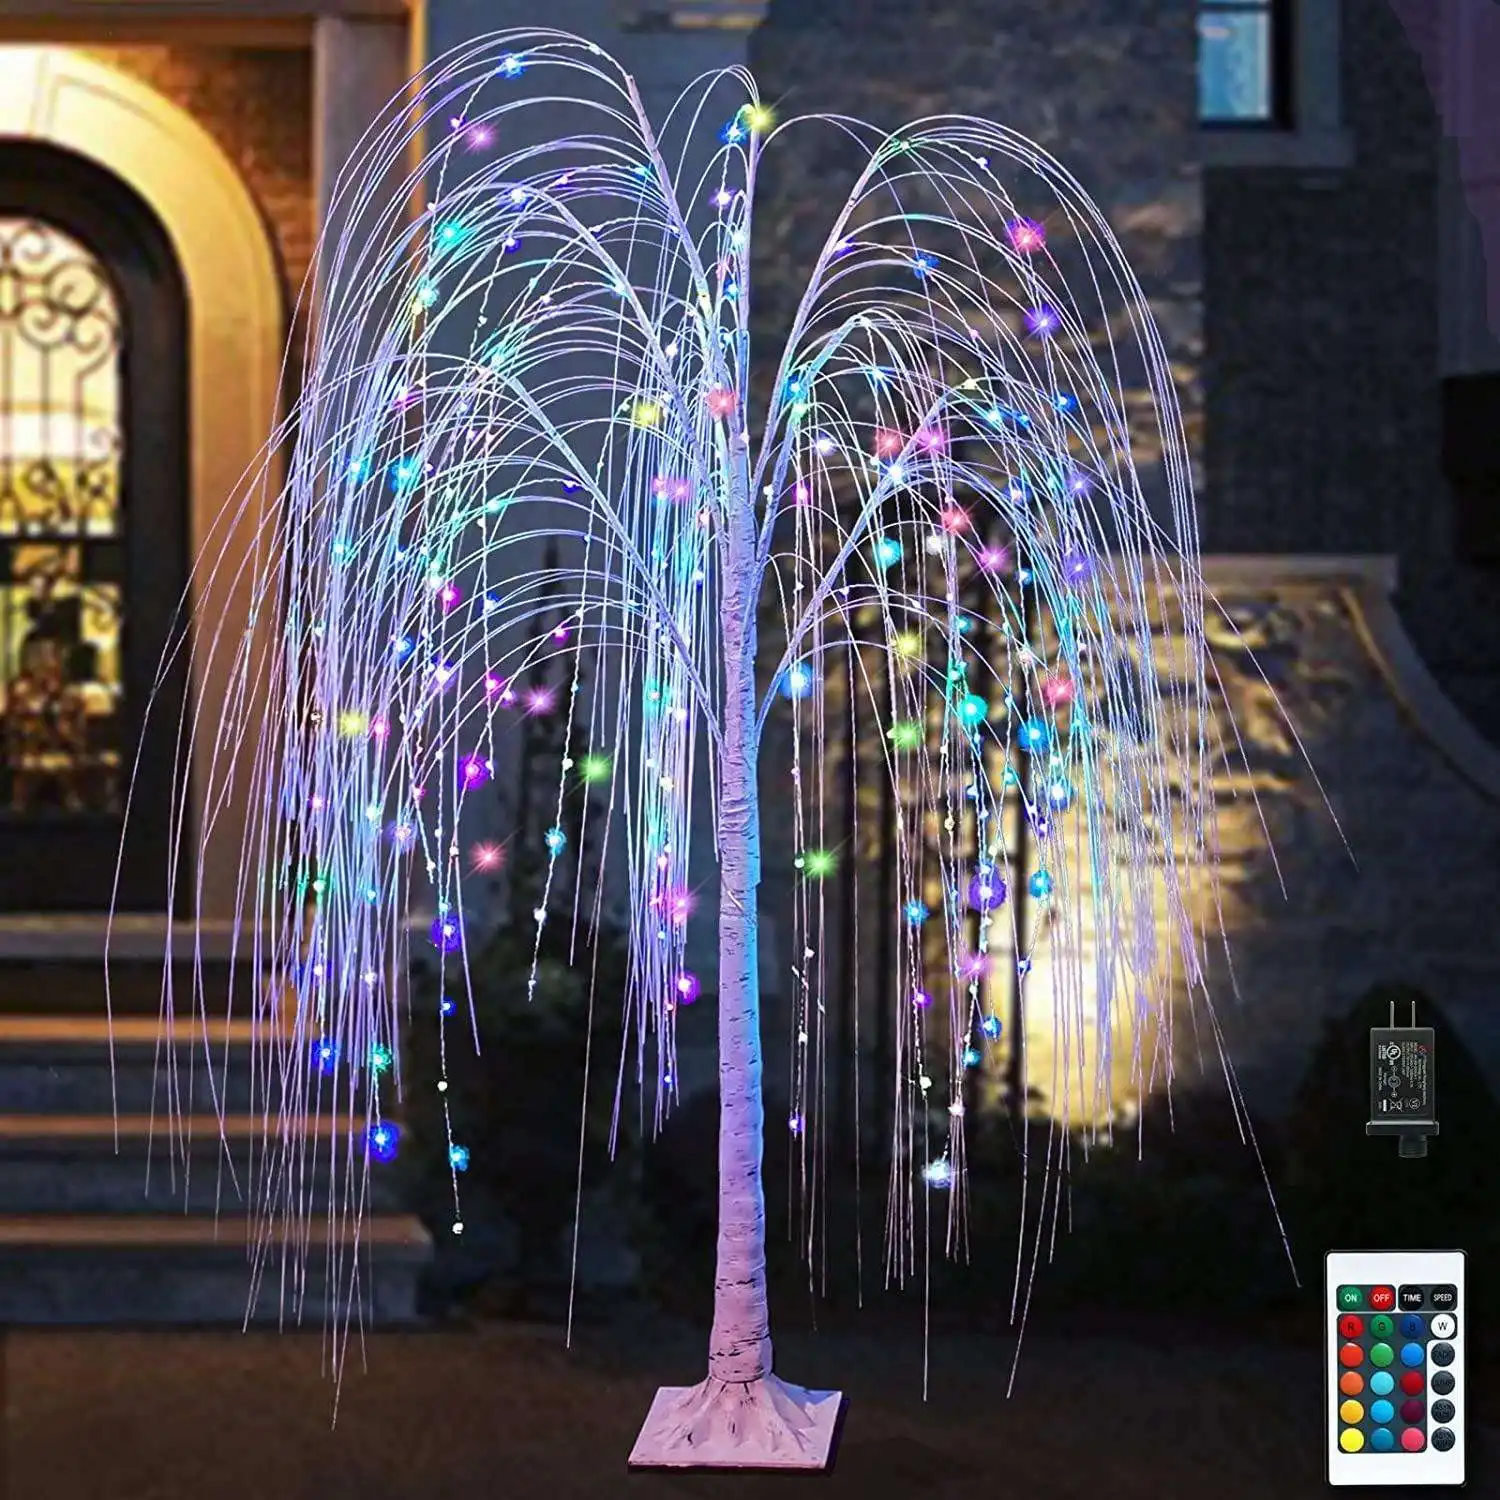 Ver imagen más grande Compartir LED Árboles de Navidad Decoraciones de sauce Luces de calle Vacaciones Decoración para el hogar Adornos de lujo Lámparas Outdo